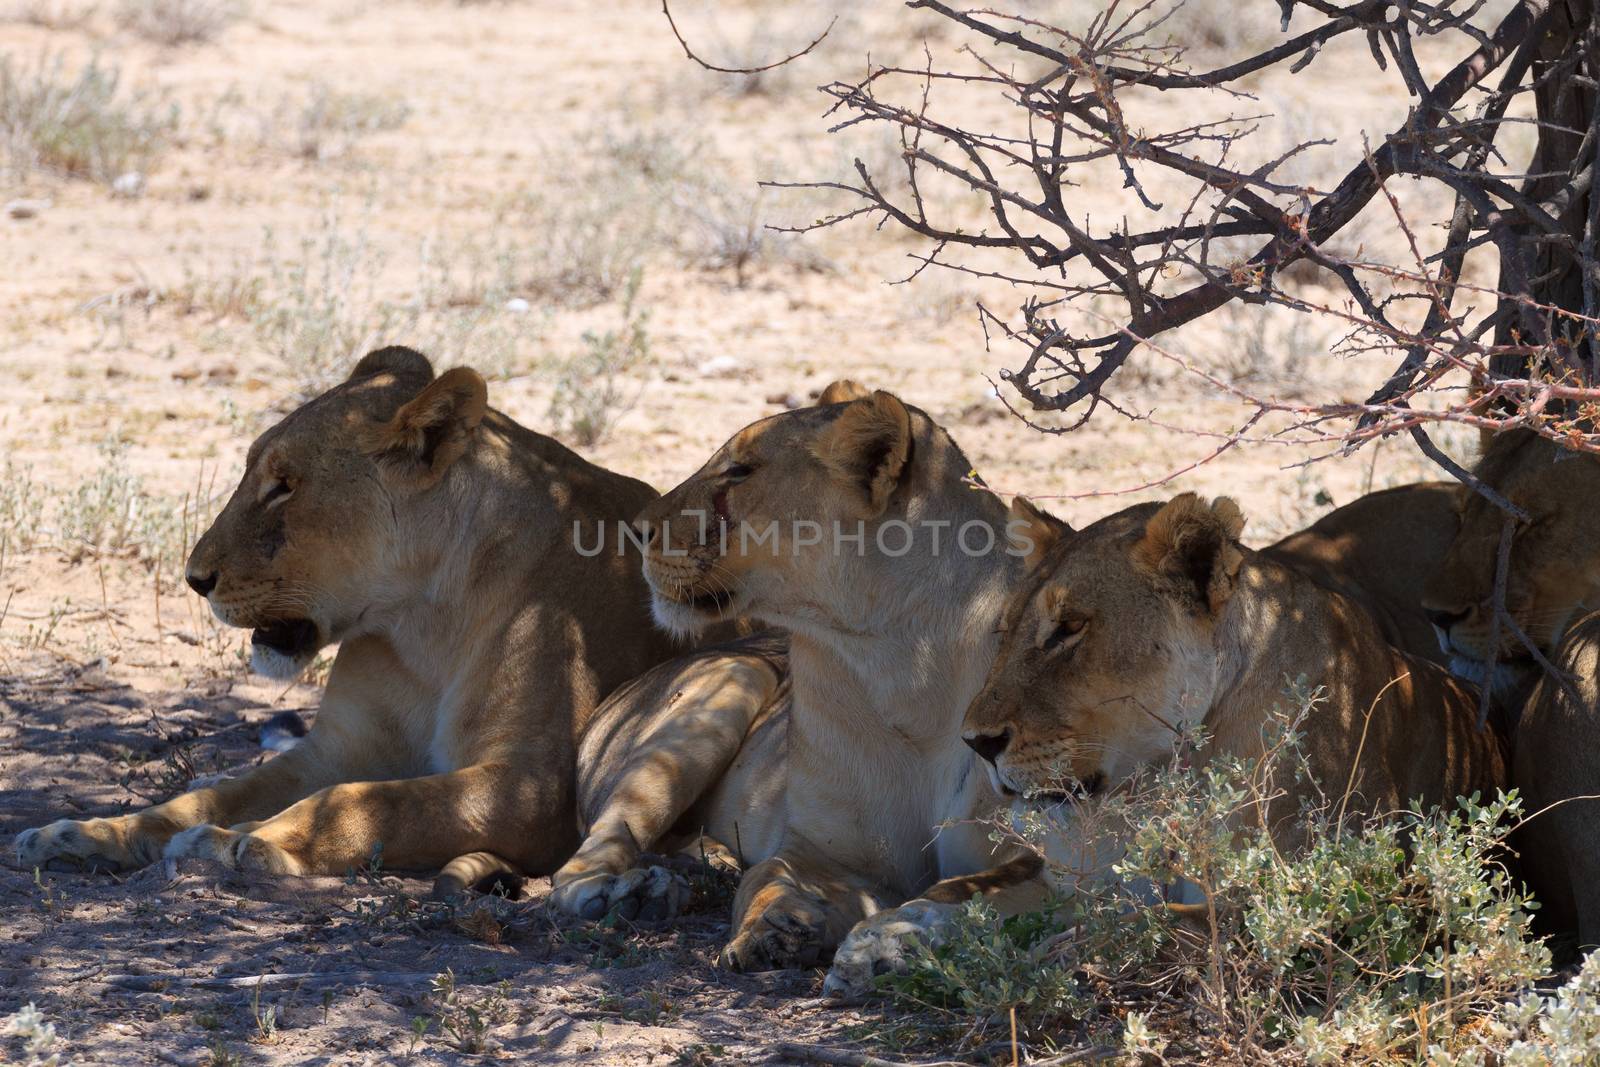 Lions sleeping under trees at Etosha National Park, Namibia